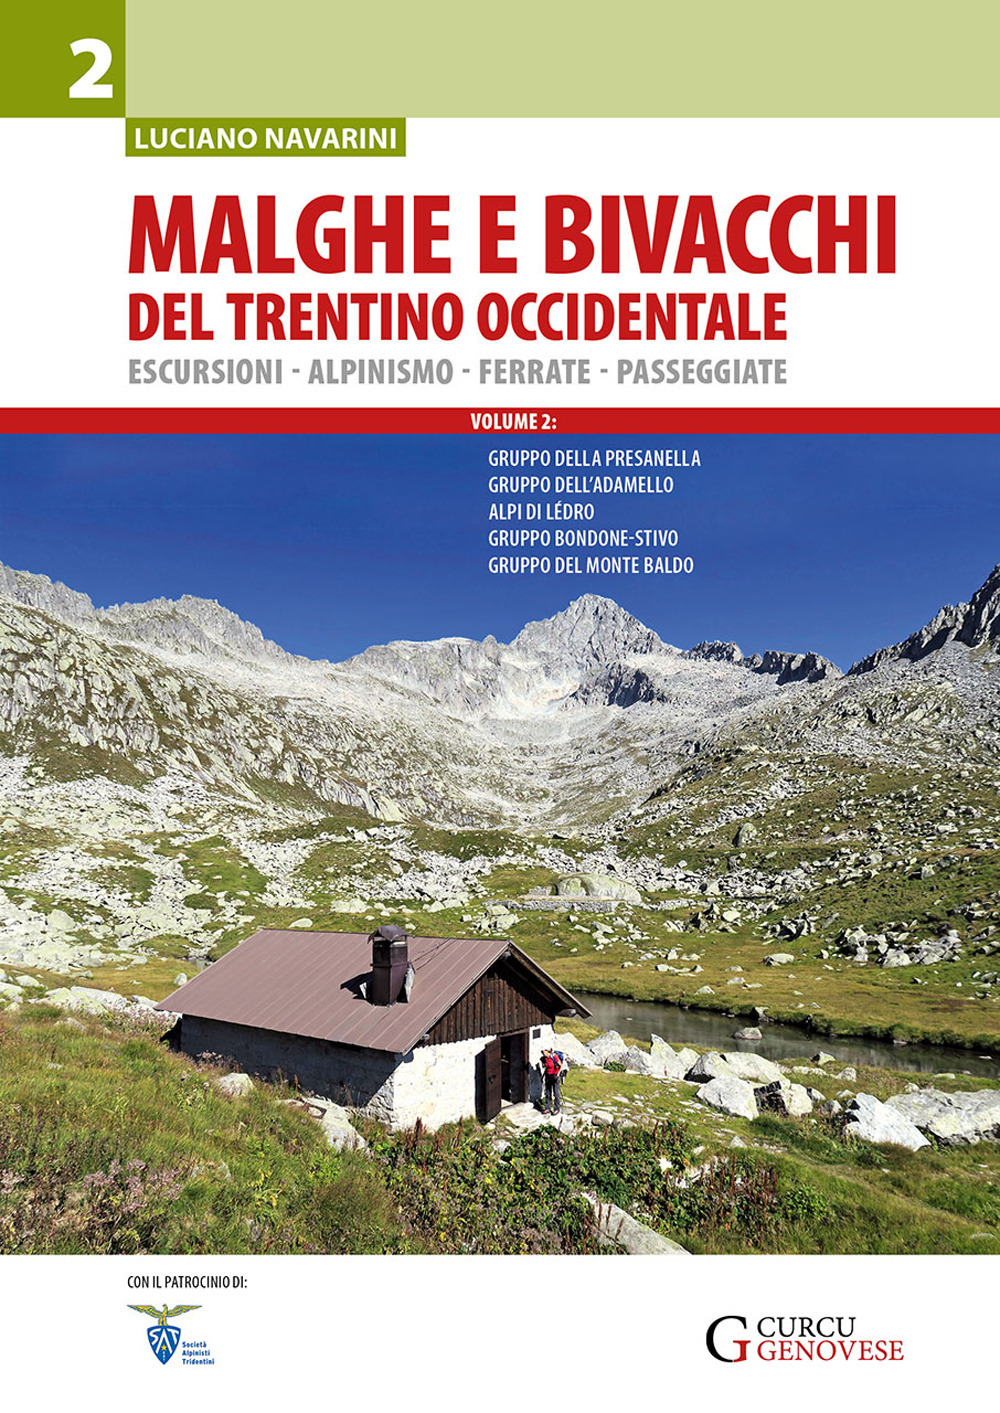 Malghe e bivacchi del Trentino occidentale. Escursioni, alpinismo, ferrate, passeggiate. Vol. 2